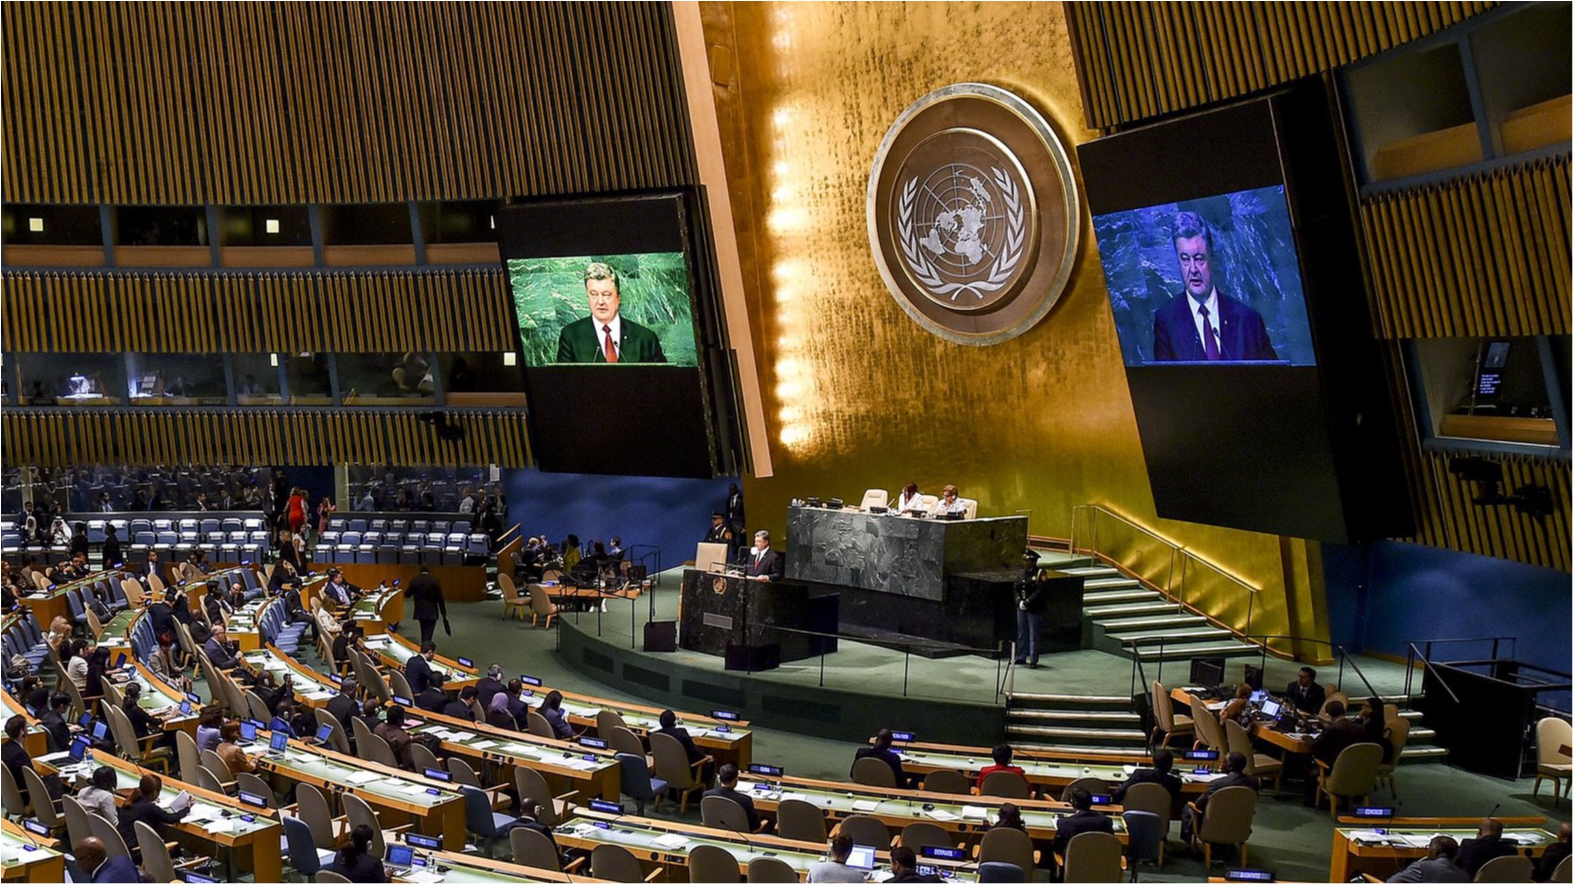 Порошенко выступает на заседании 71-й сессии Генеральной Ассамблеи ООН - фото 1